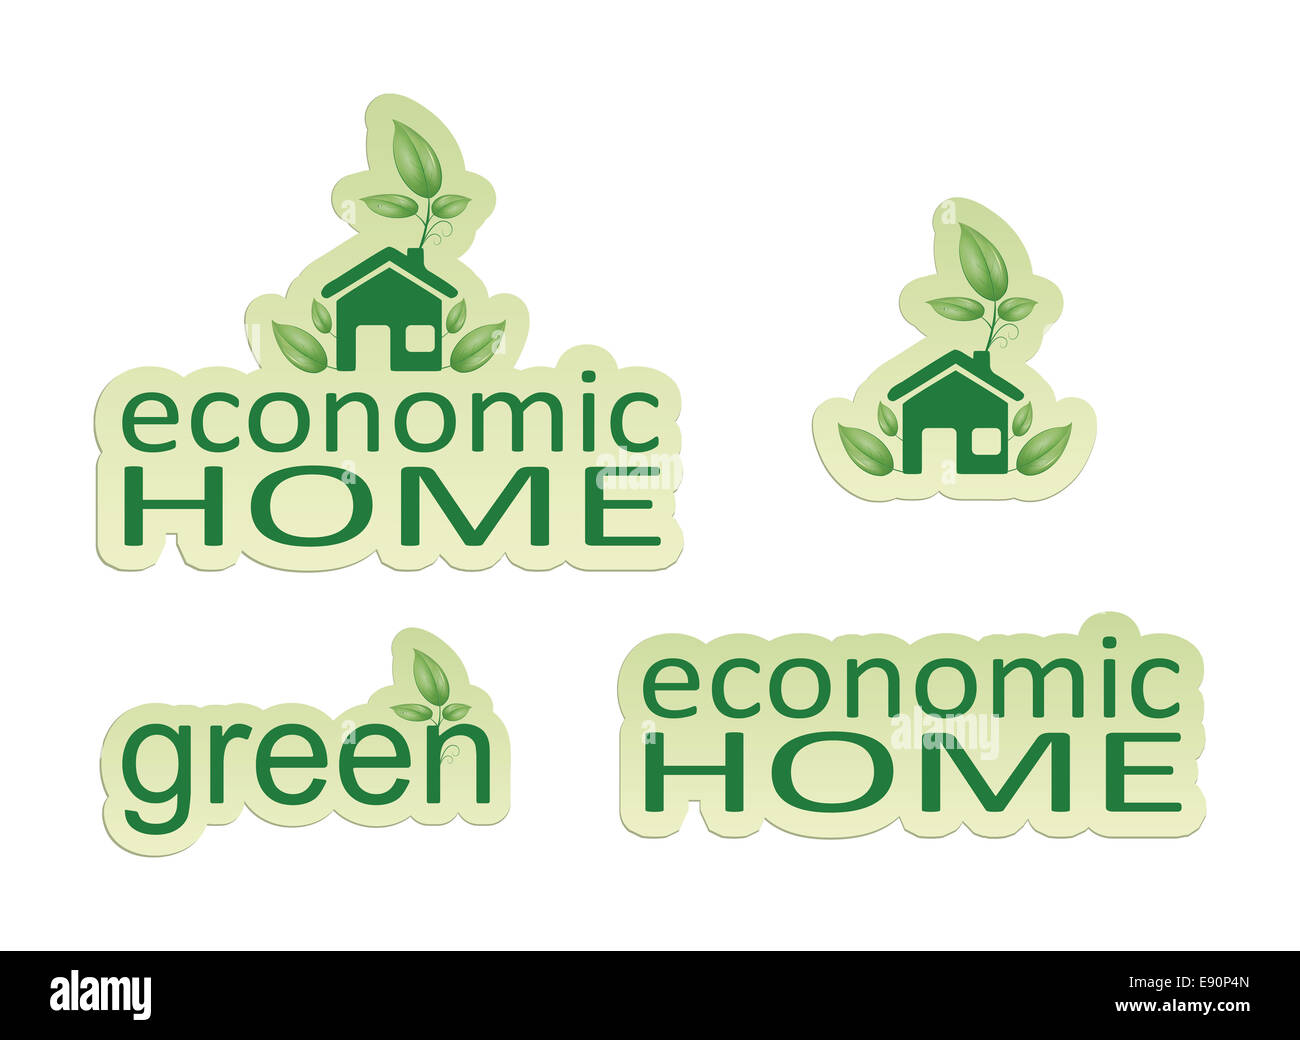 economic home Stock Photo